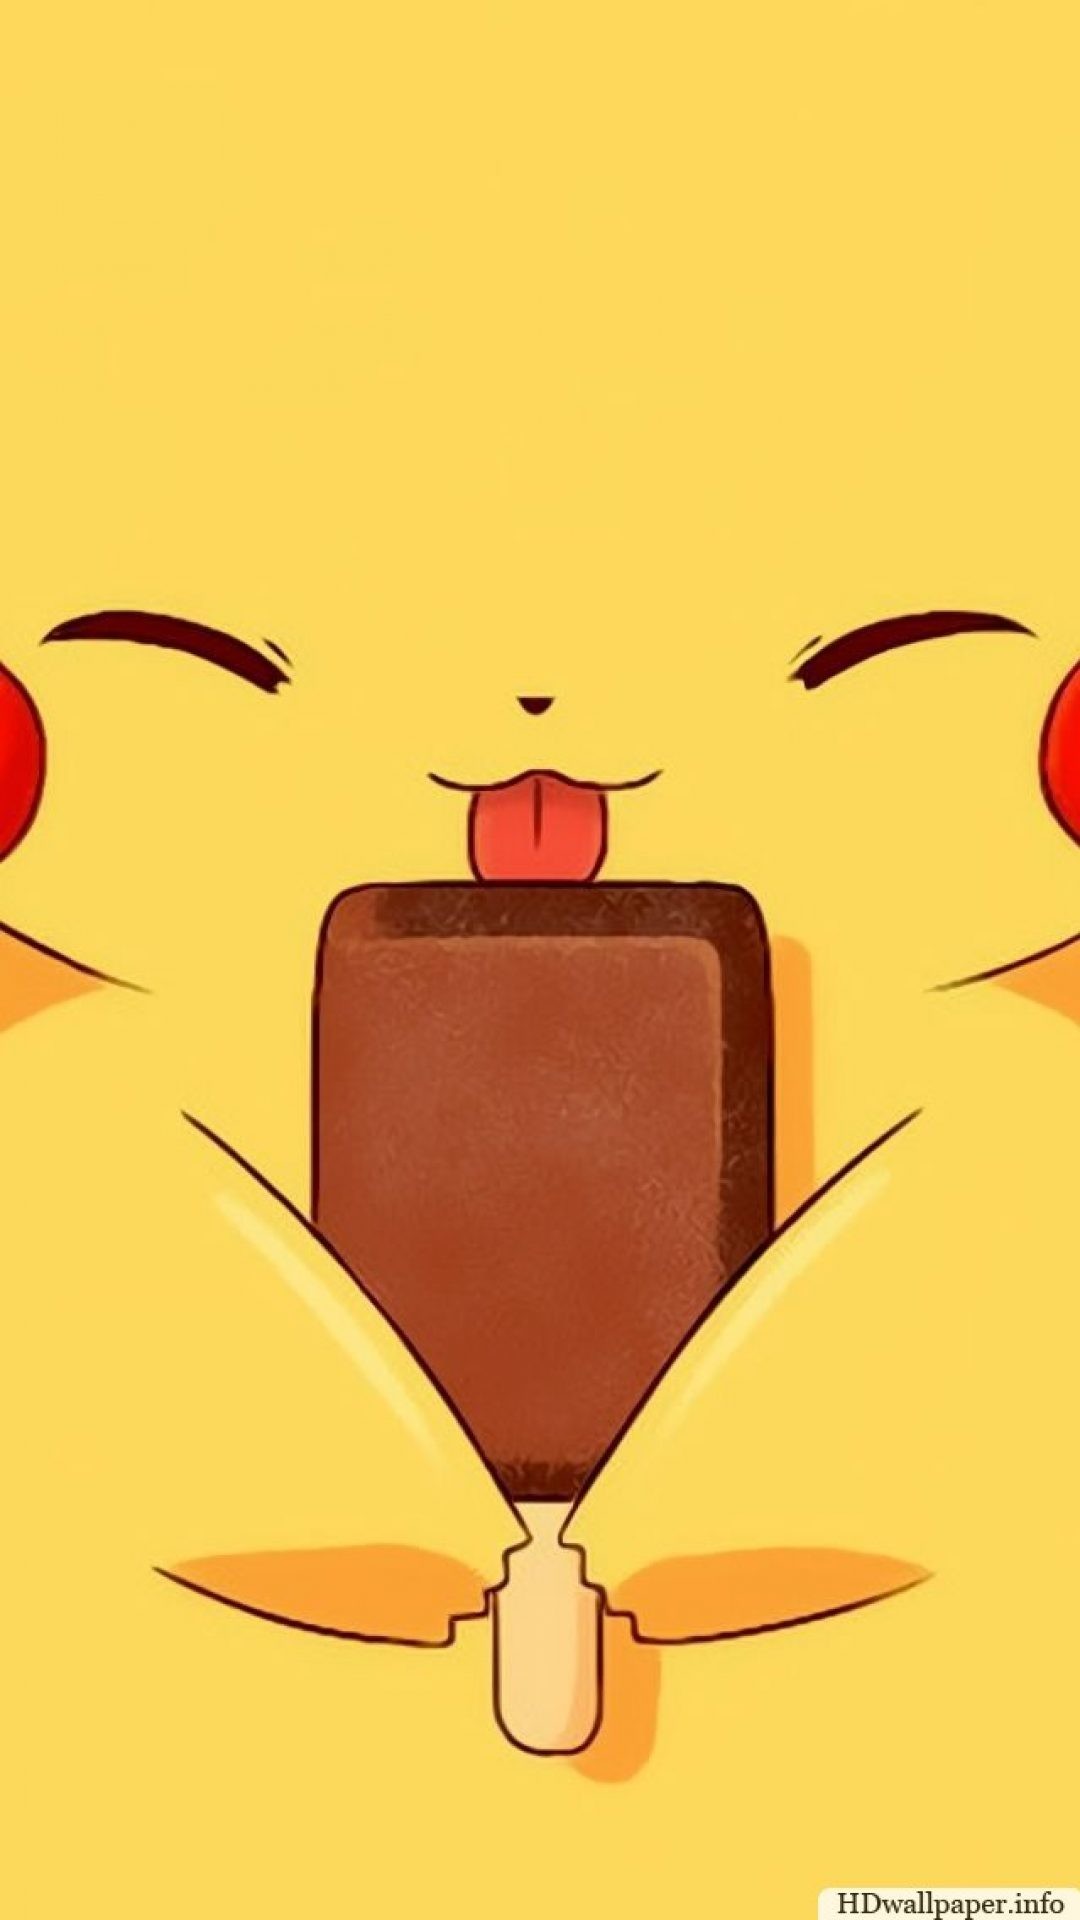 Download Pikachu Wallpaper x px High Resolution | Wallpapers For Desktop |  Pinterest | Wallpaper and Cartoon